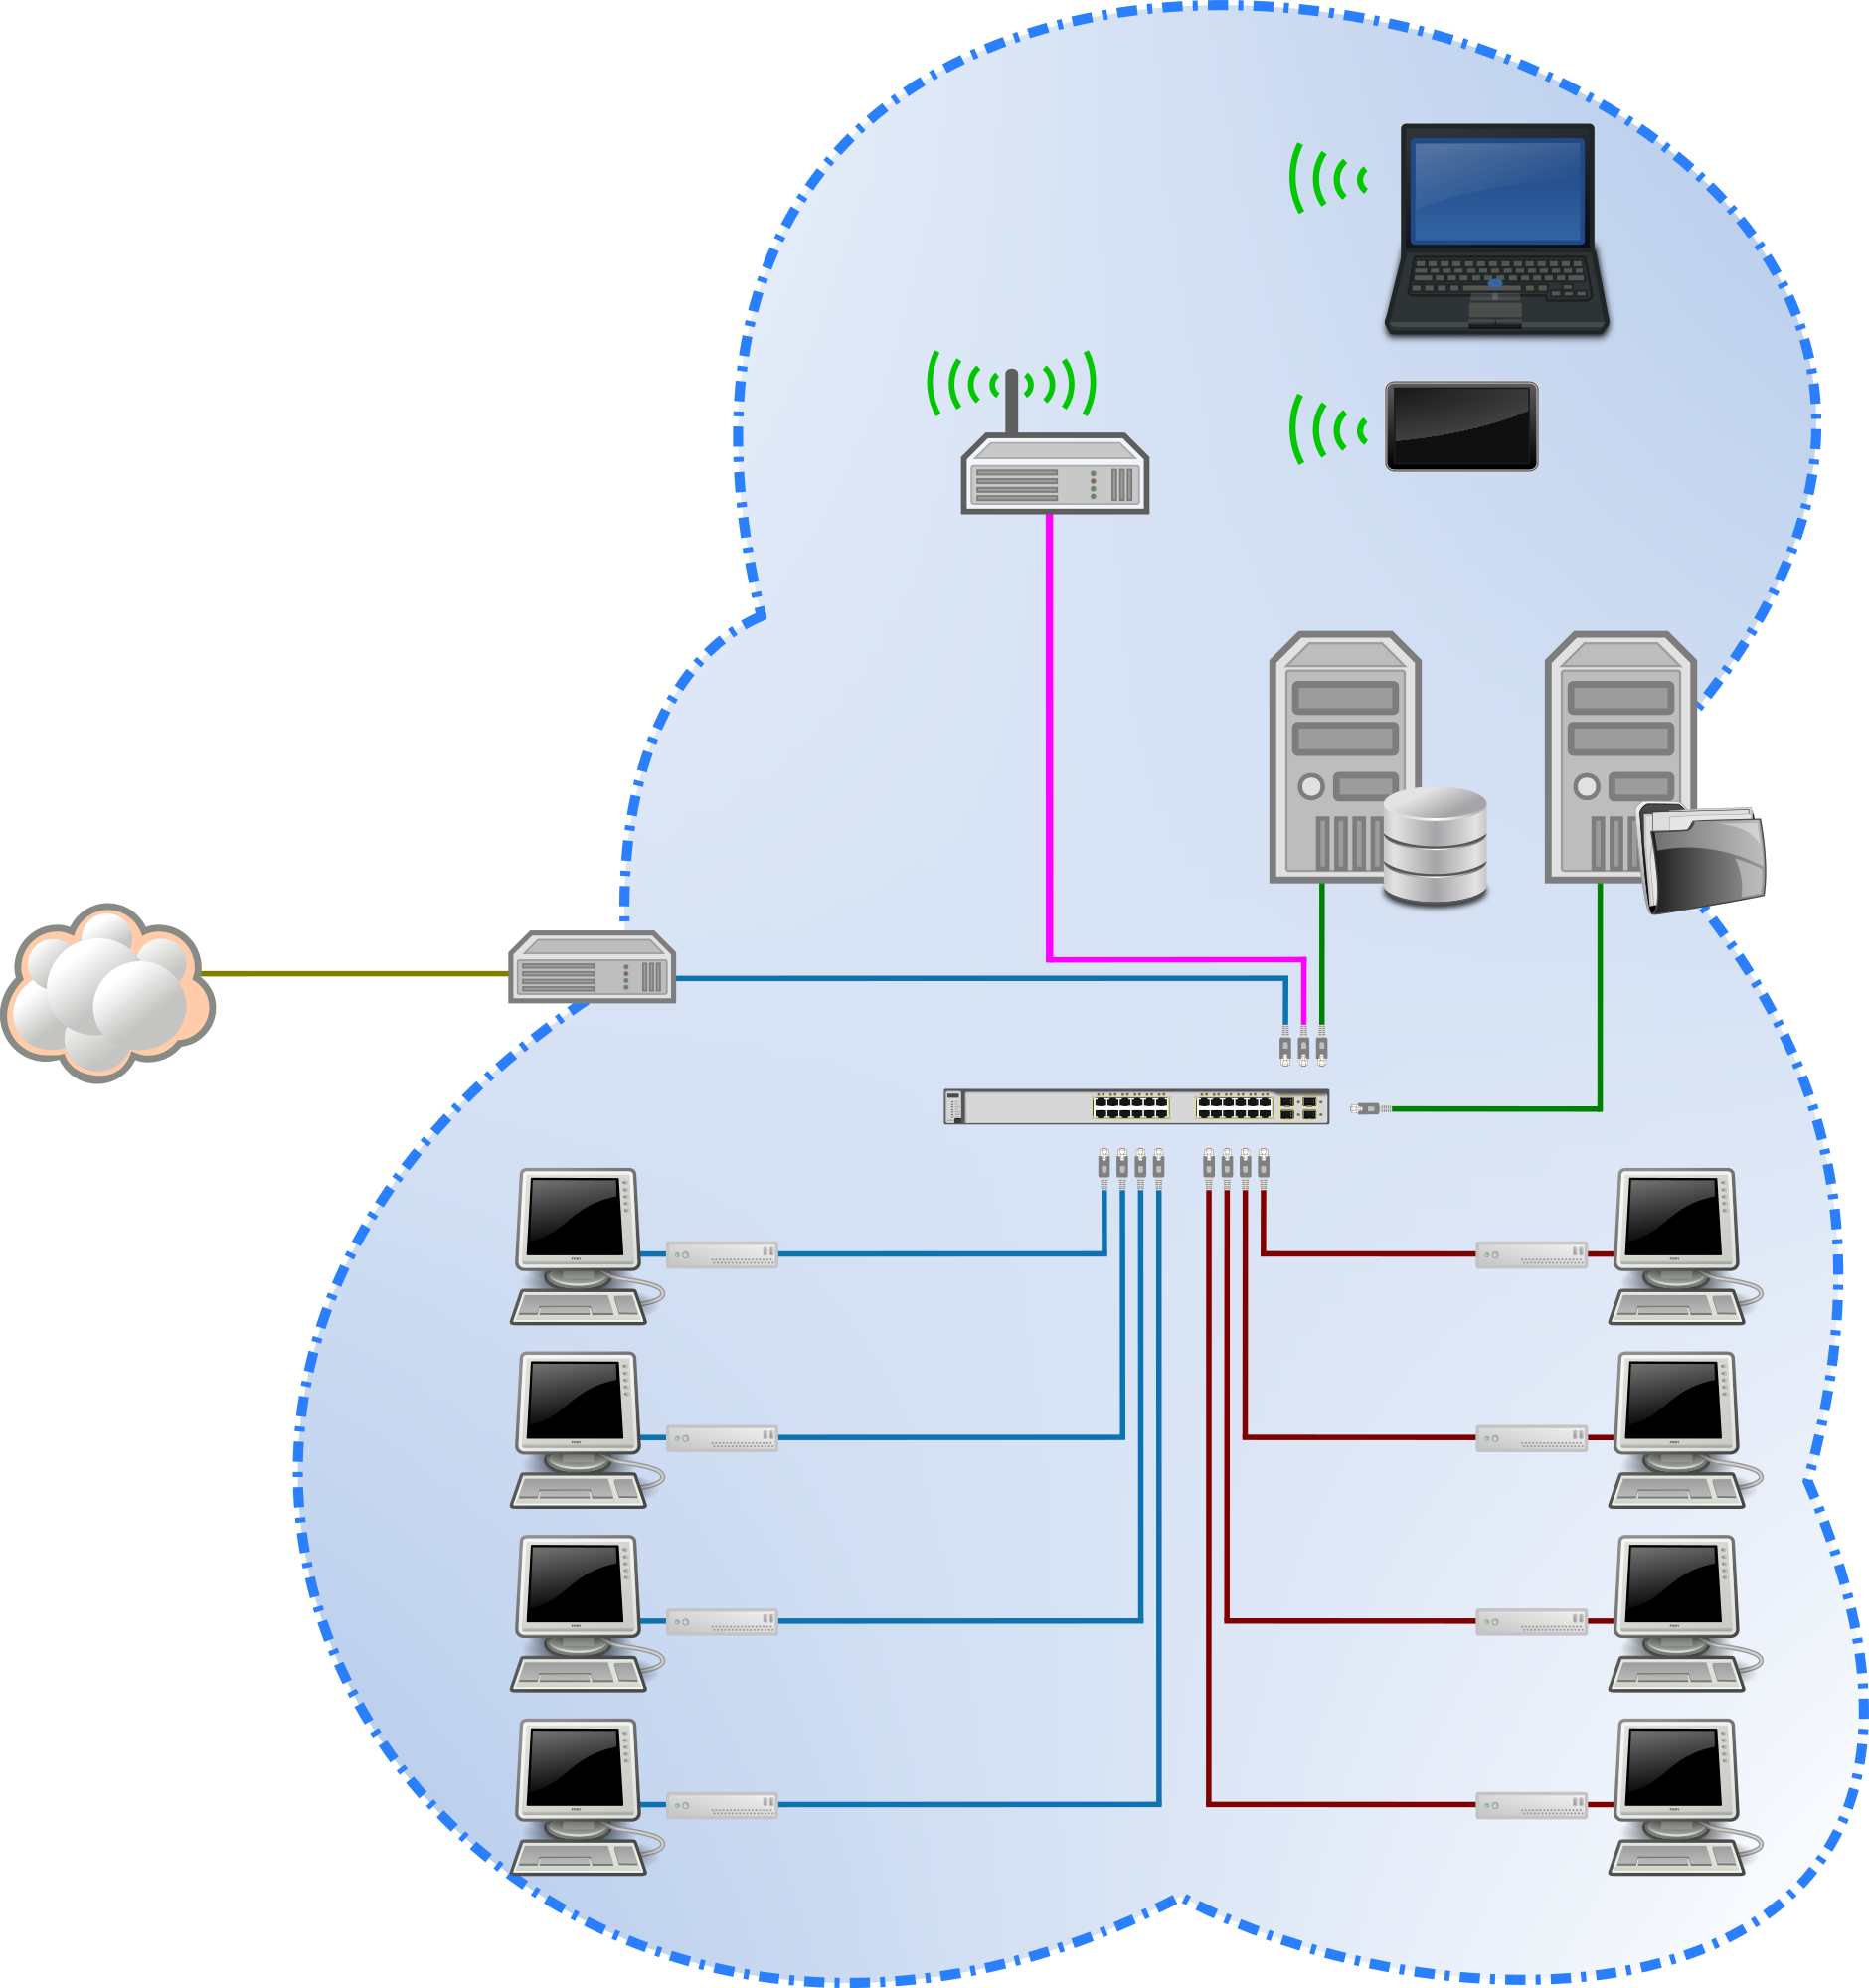 La imagen muestra varios dispositivos informáticos conectados en una red de área local